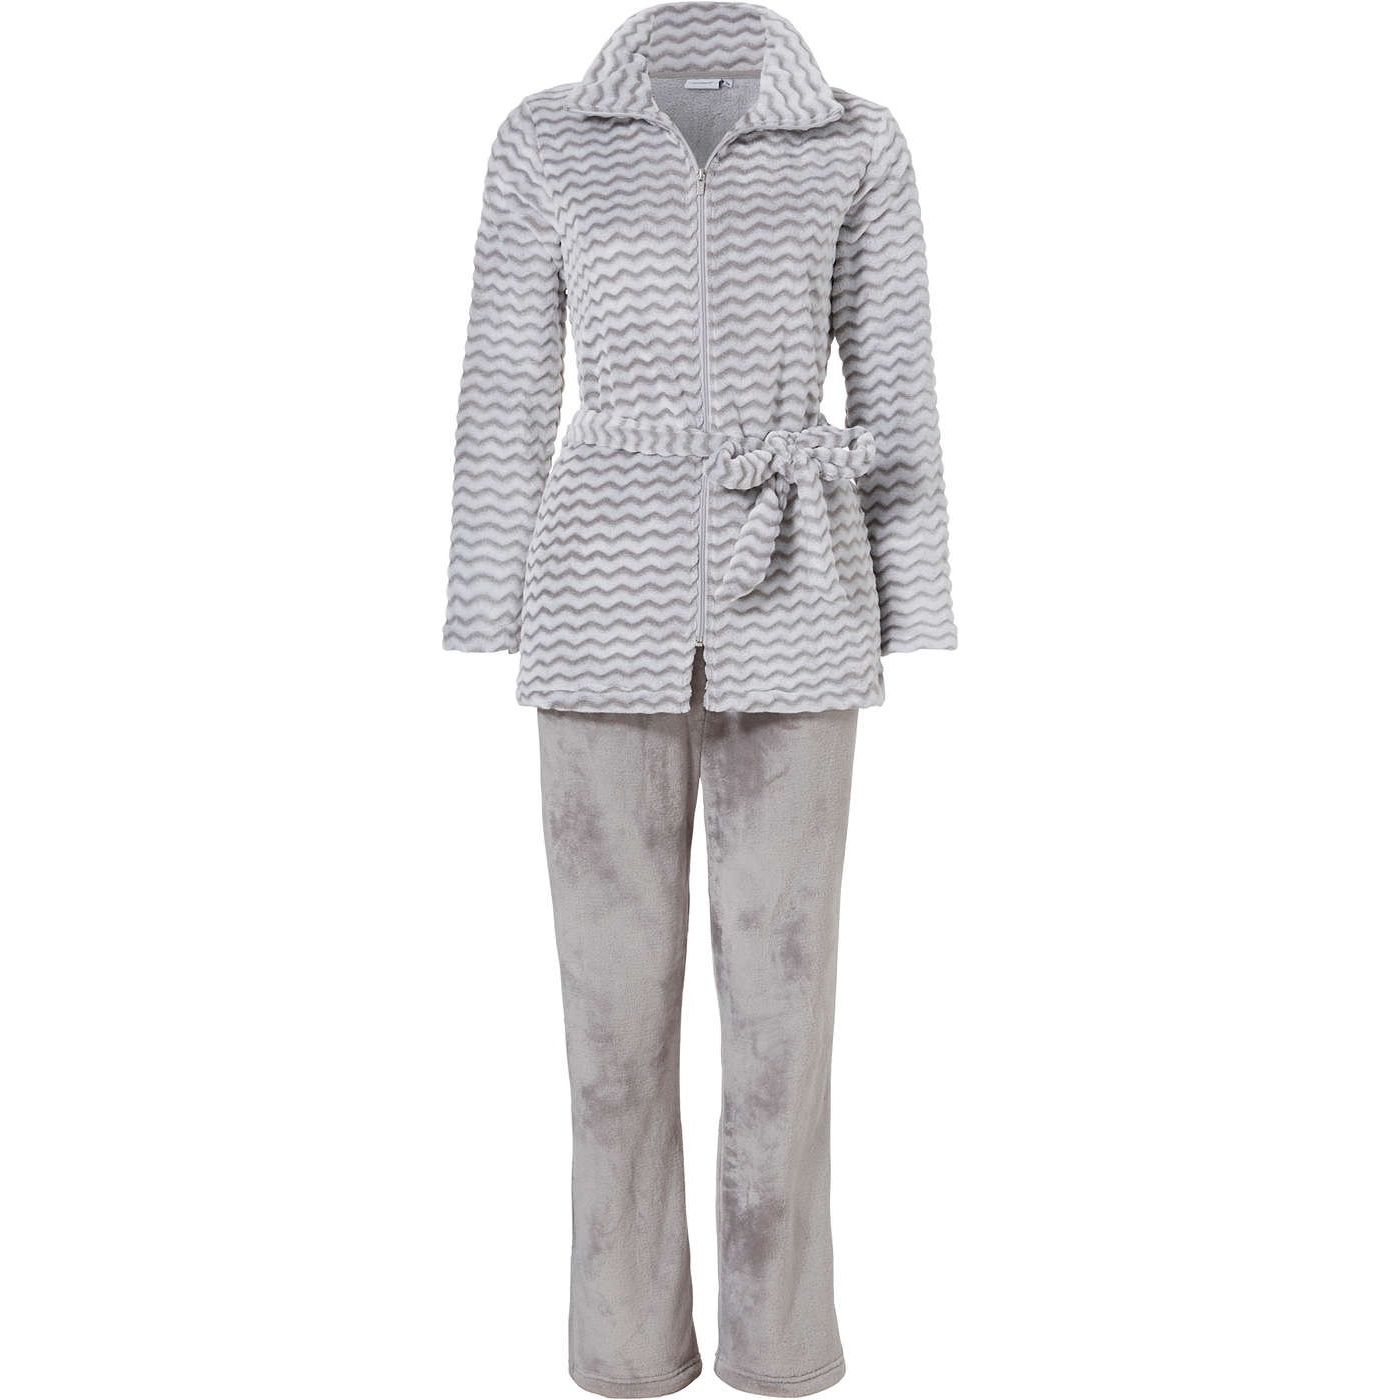 Fleece Pastunette zilver | Online de mooiste pyjama's, nachthemden, ondermode en meer